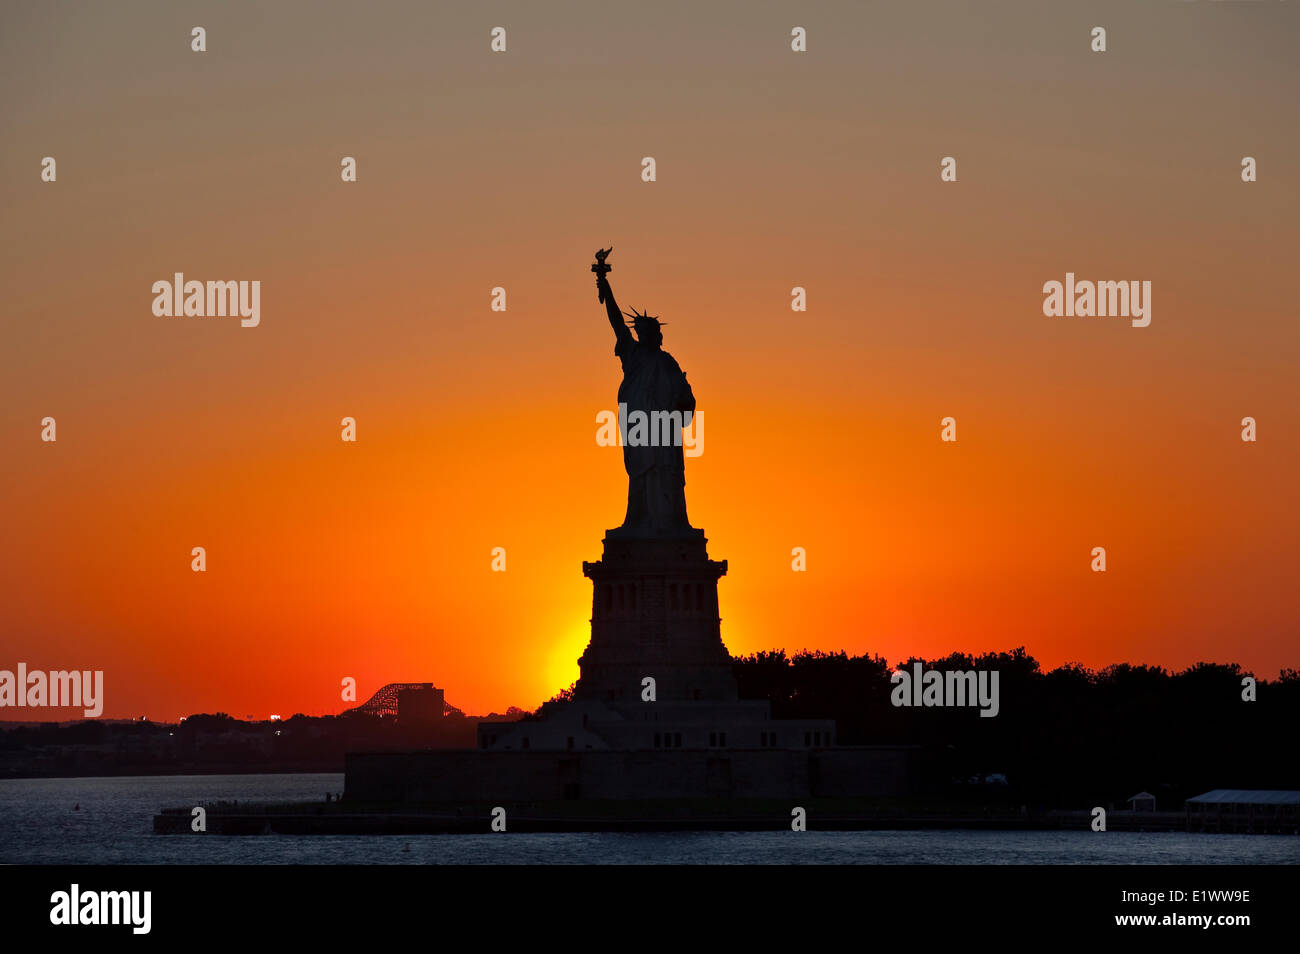 La silhouette de la Statue de la liberté contre le soleil couchant photographié. Liberty Island, New York, U.S.A. Banque D'Images